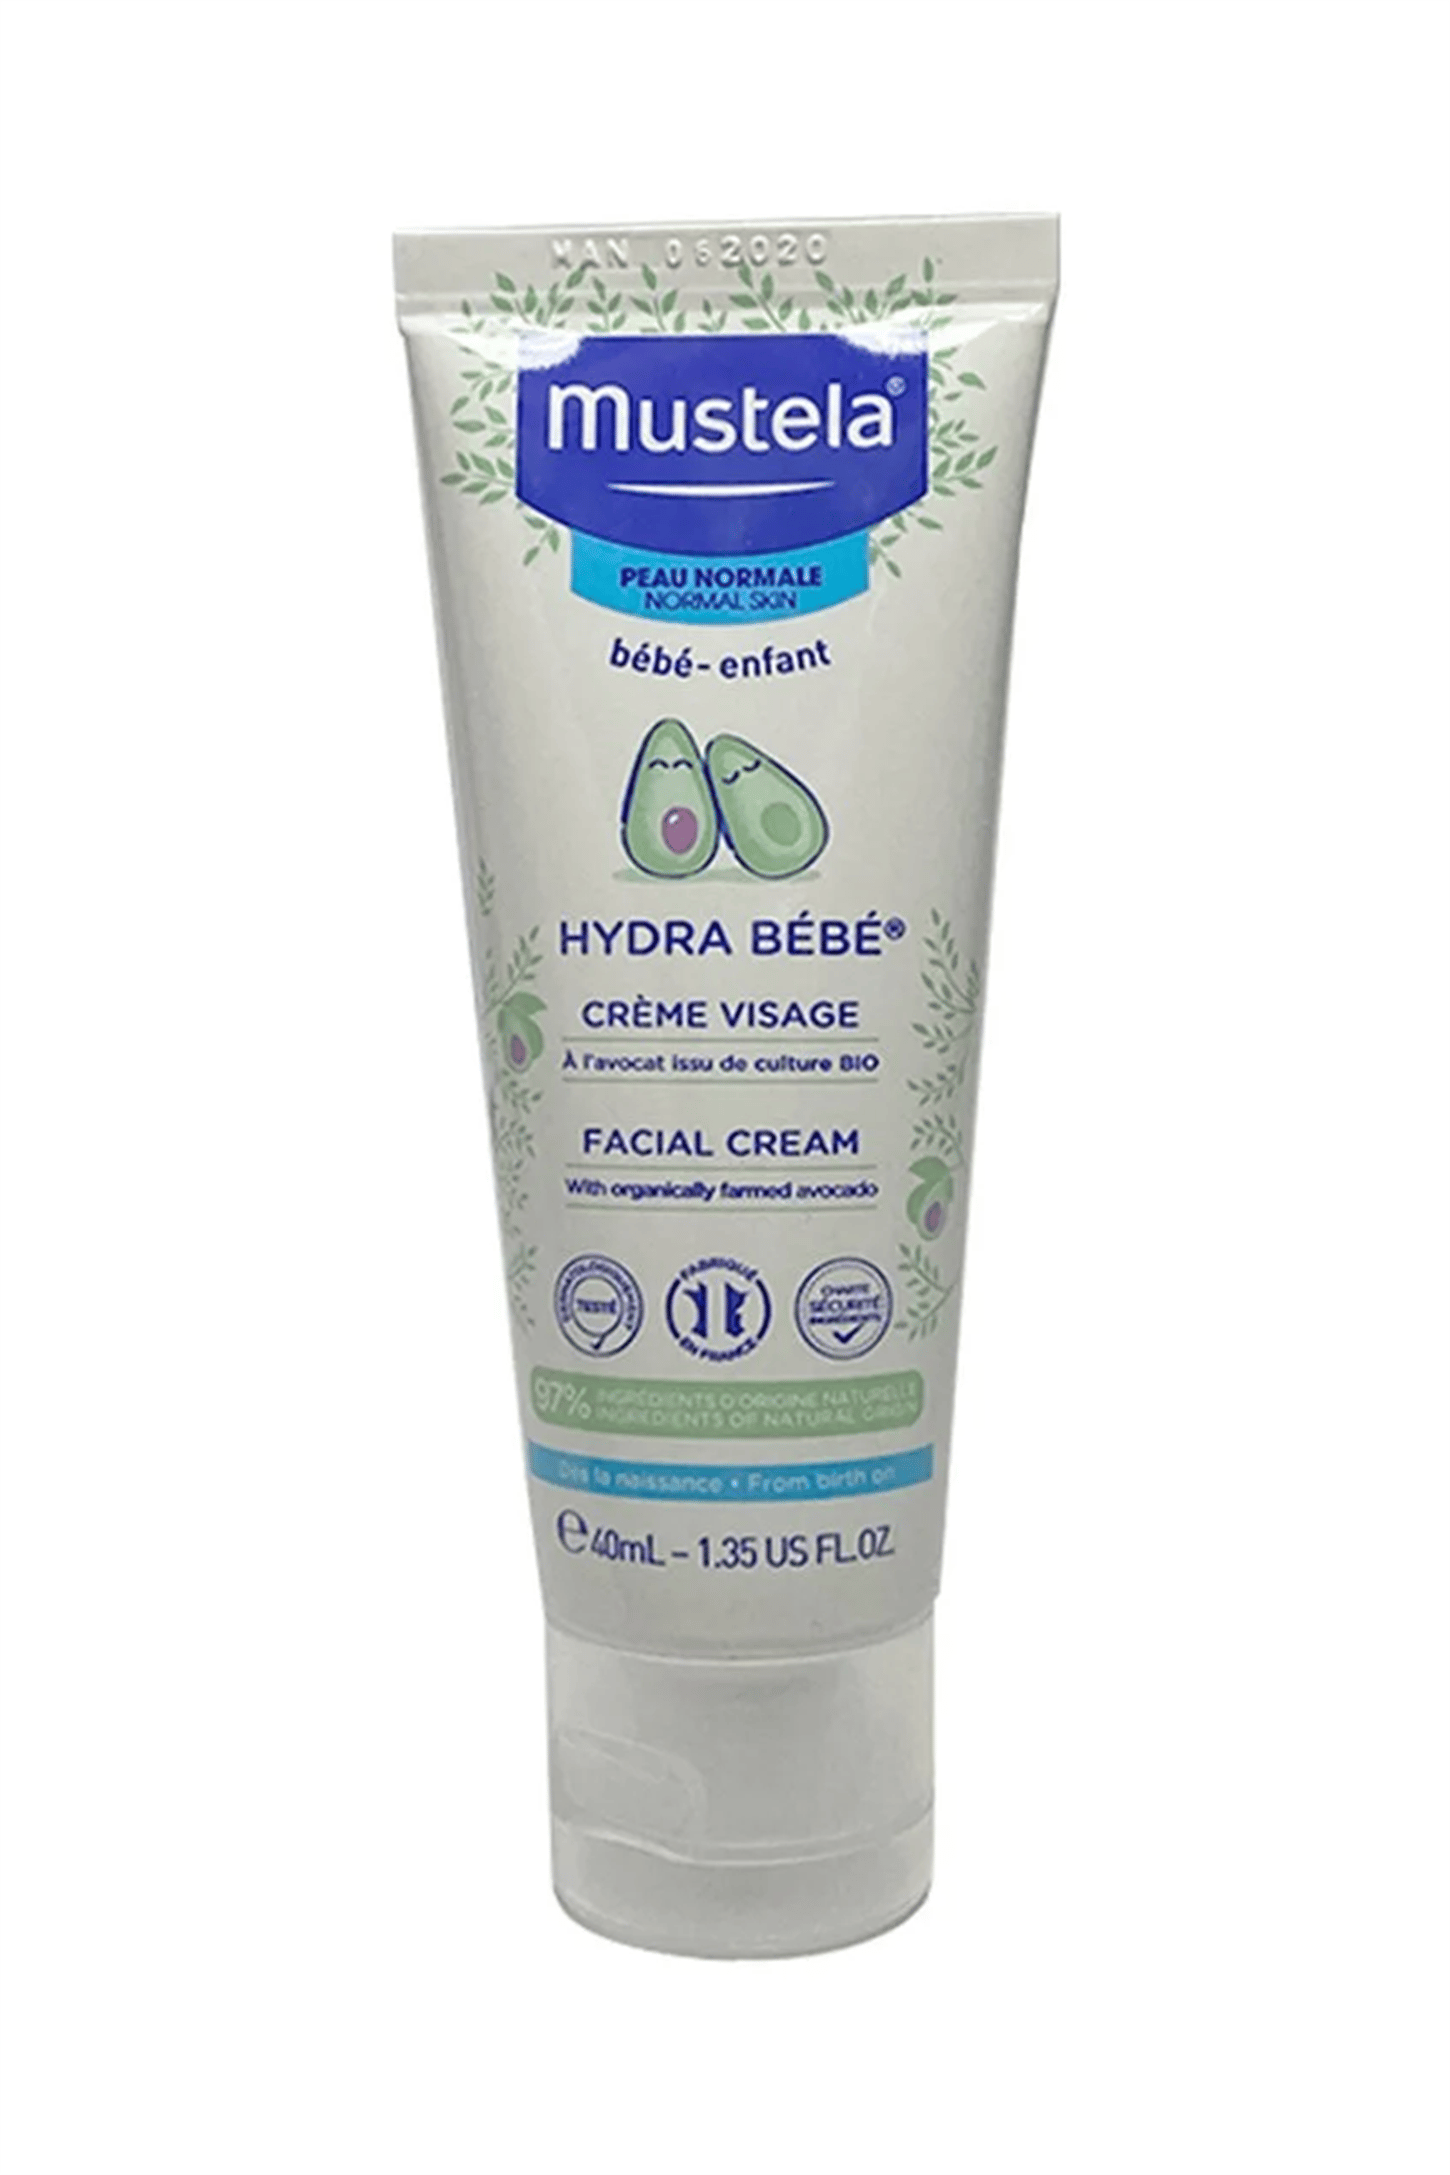 Mustela Hydra Bebe Günlük Kullanıma Uygun Yüz Kremi 40 ml | EczanemveBen.com